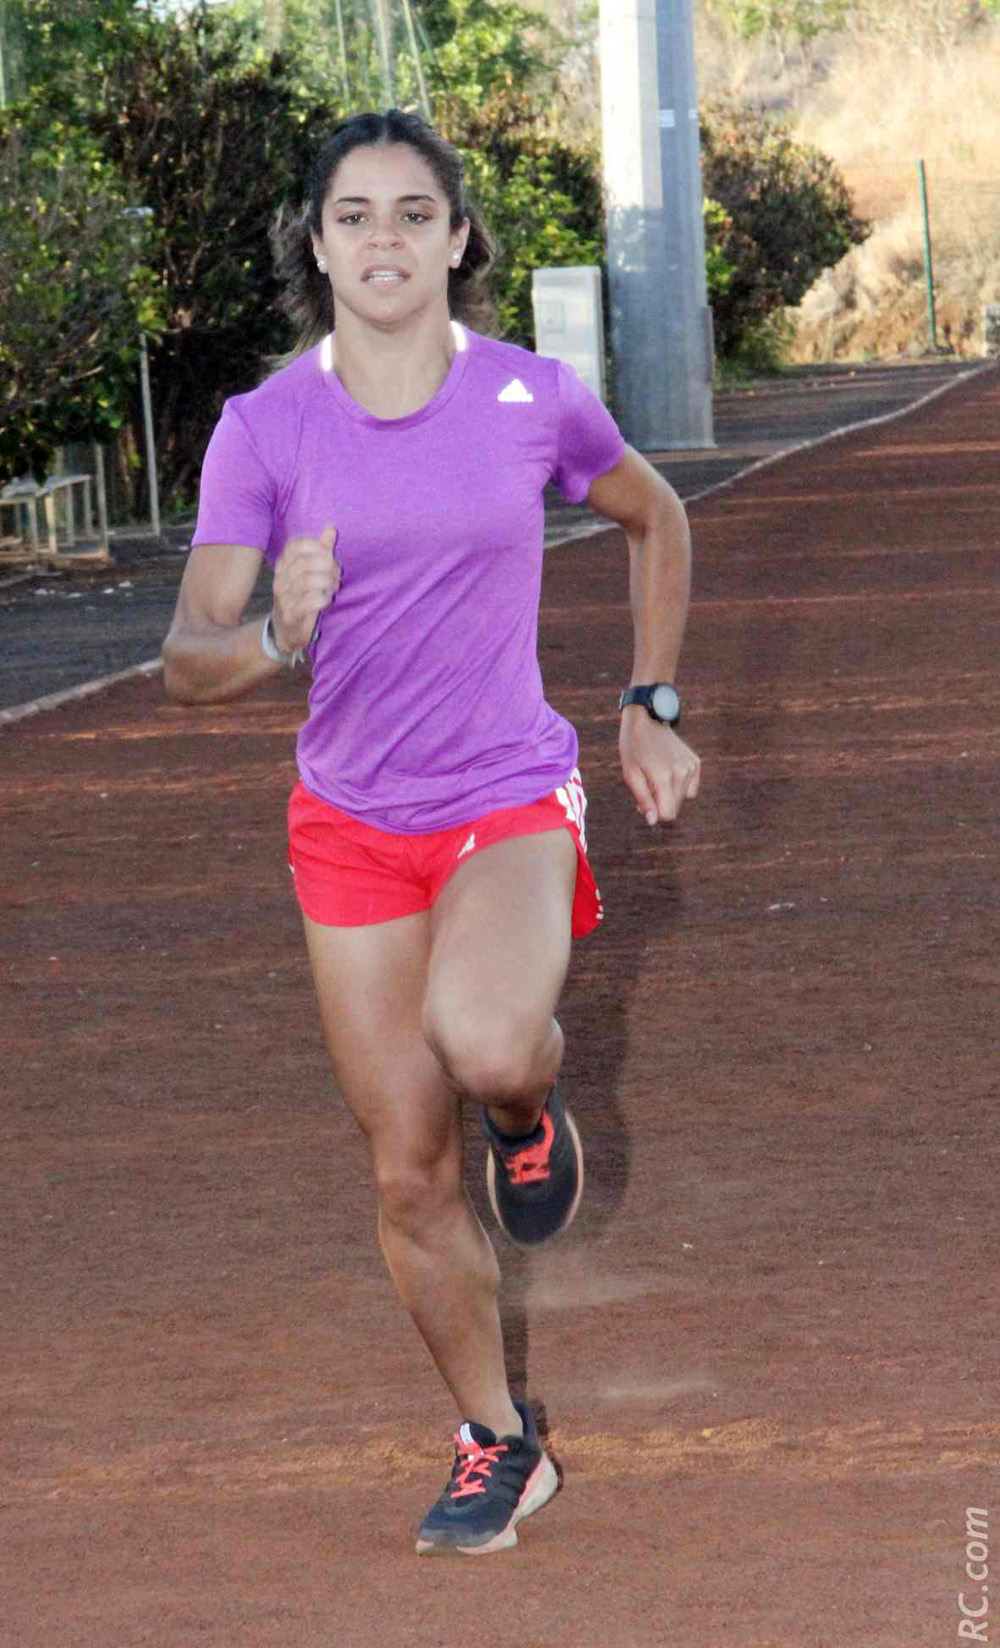 Originaire de Saint-Leu, Coranne Gazeau avait grande envie de courir enfin dans son île. Son voeu sera exaucé, elle sera sur le 800m.